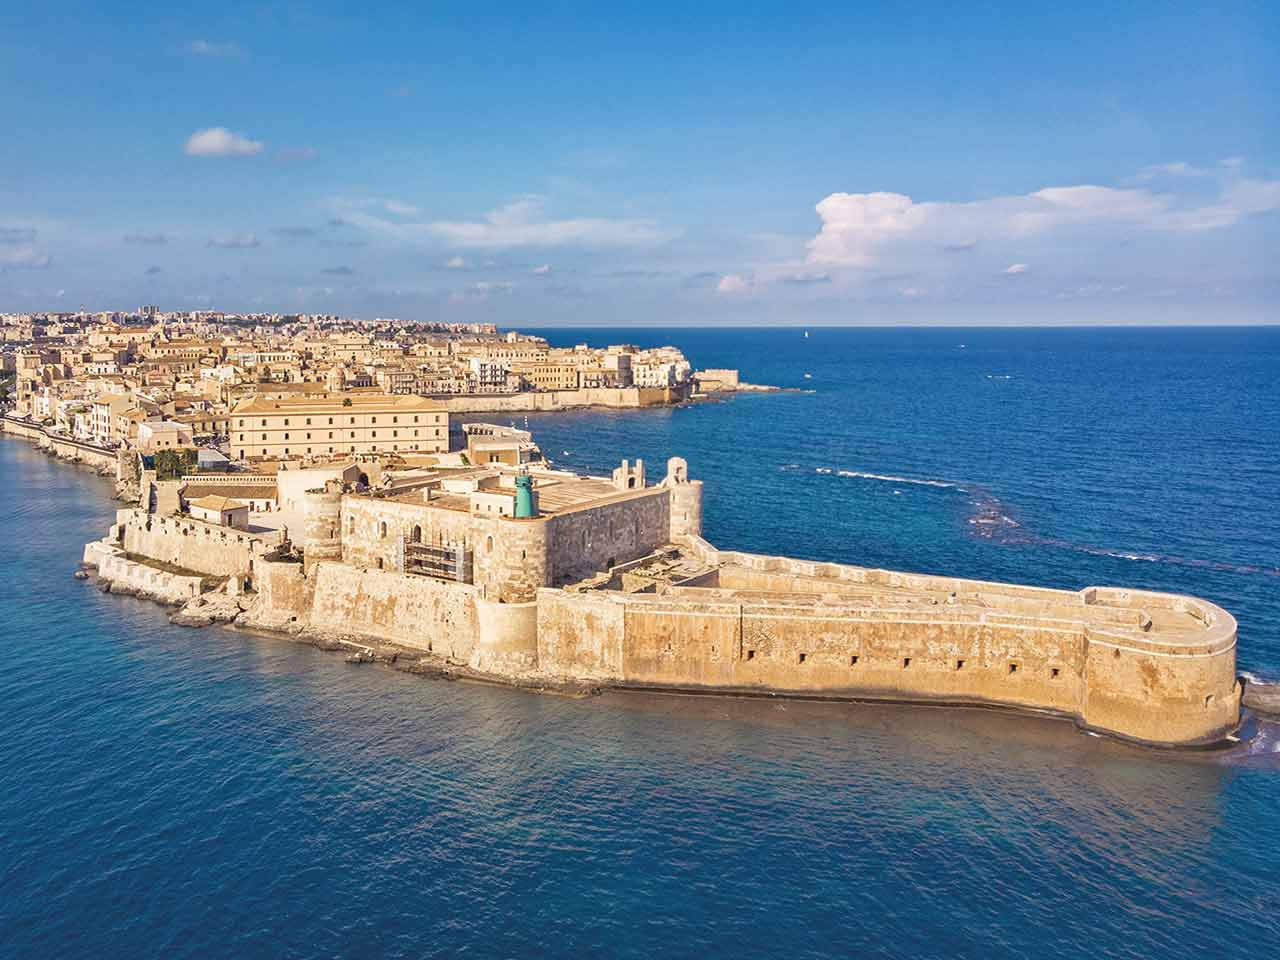 Una veduta aerea del Castello Maniace e del centro storico di Siracusa - Weekend in Sicilia a Siracusa e dintorni.